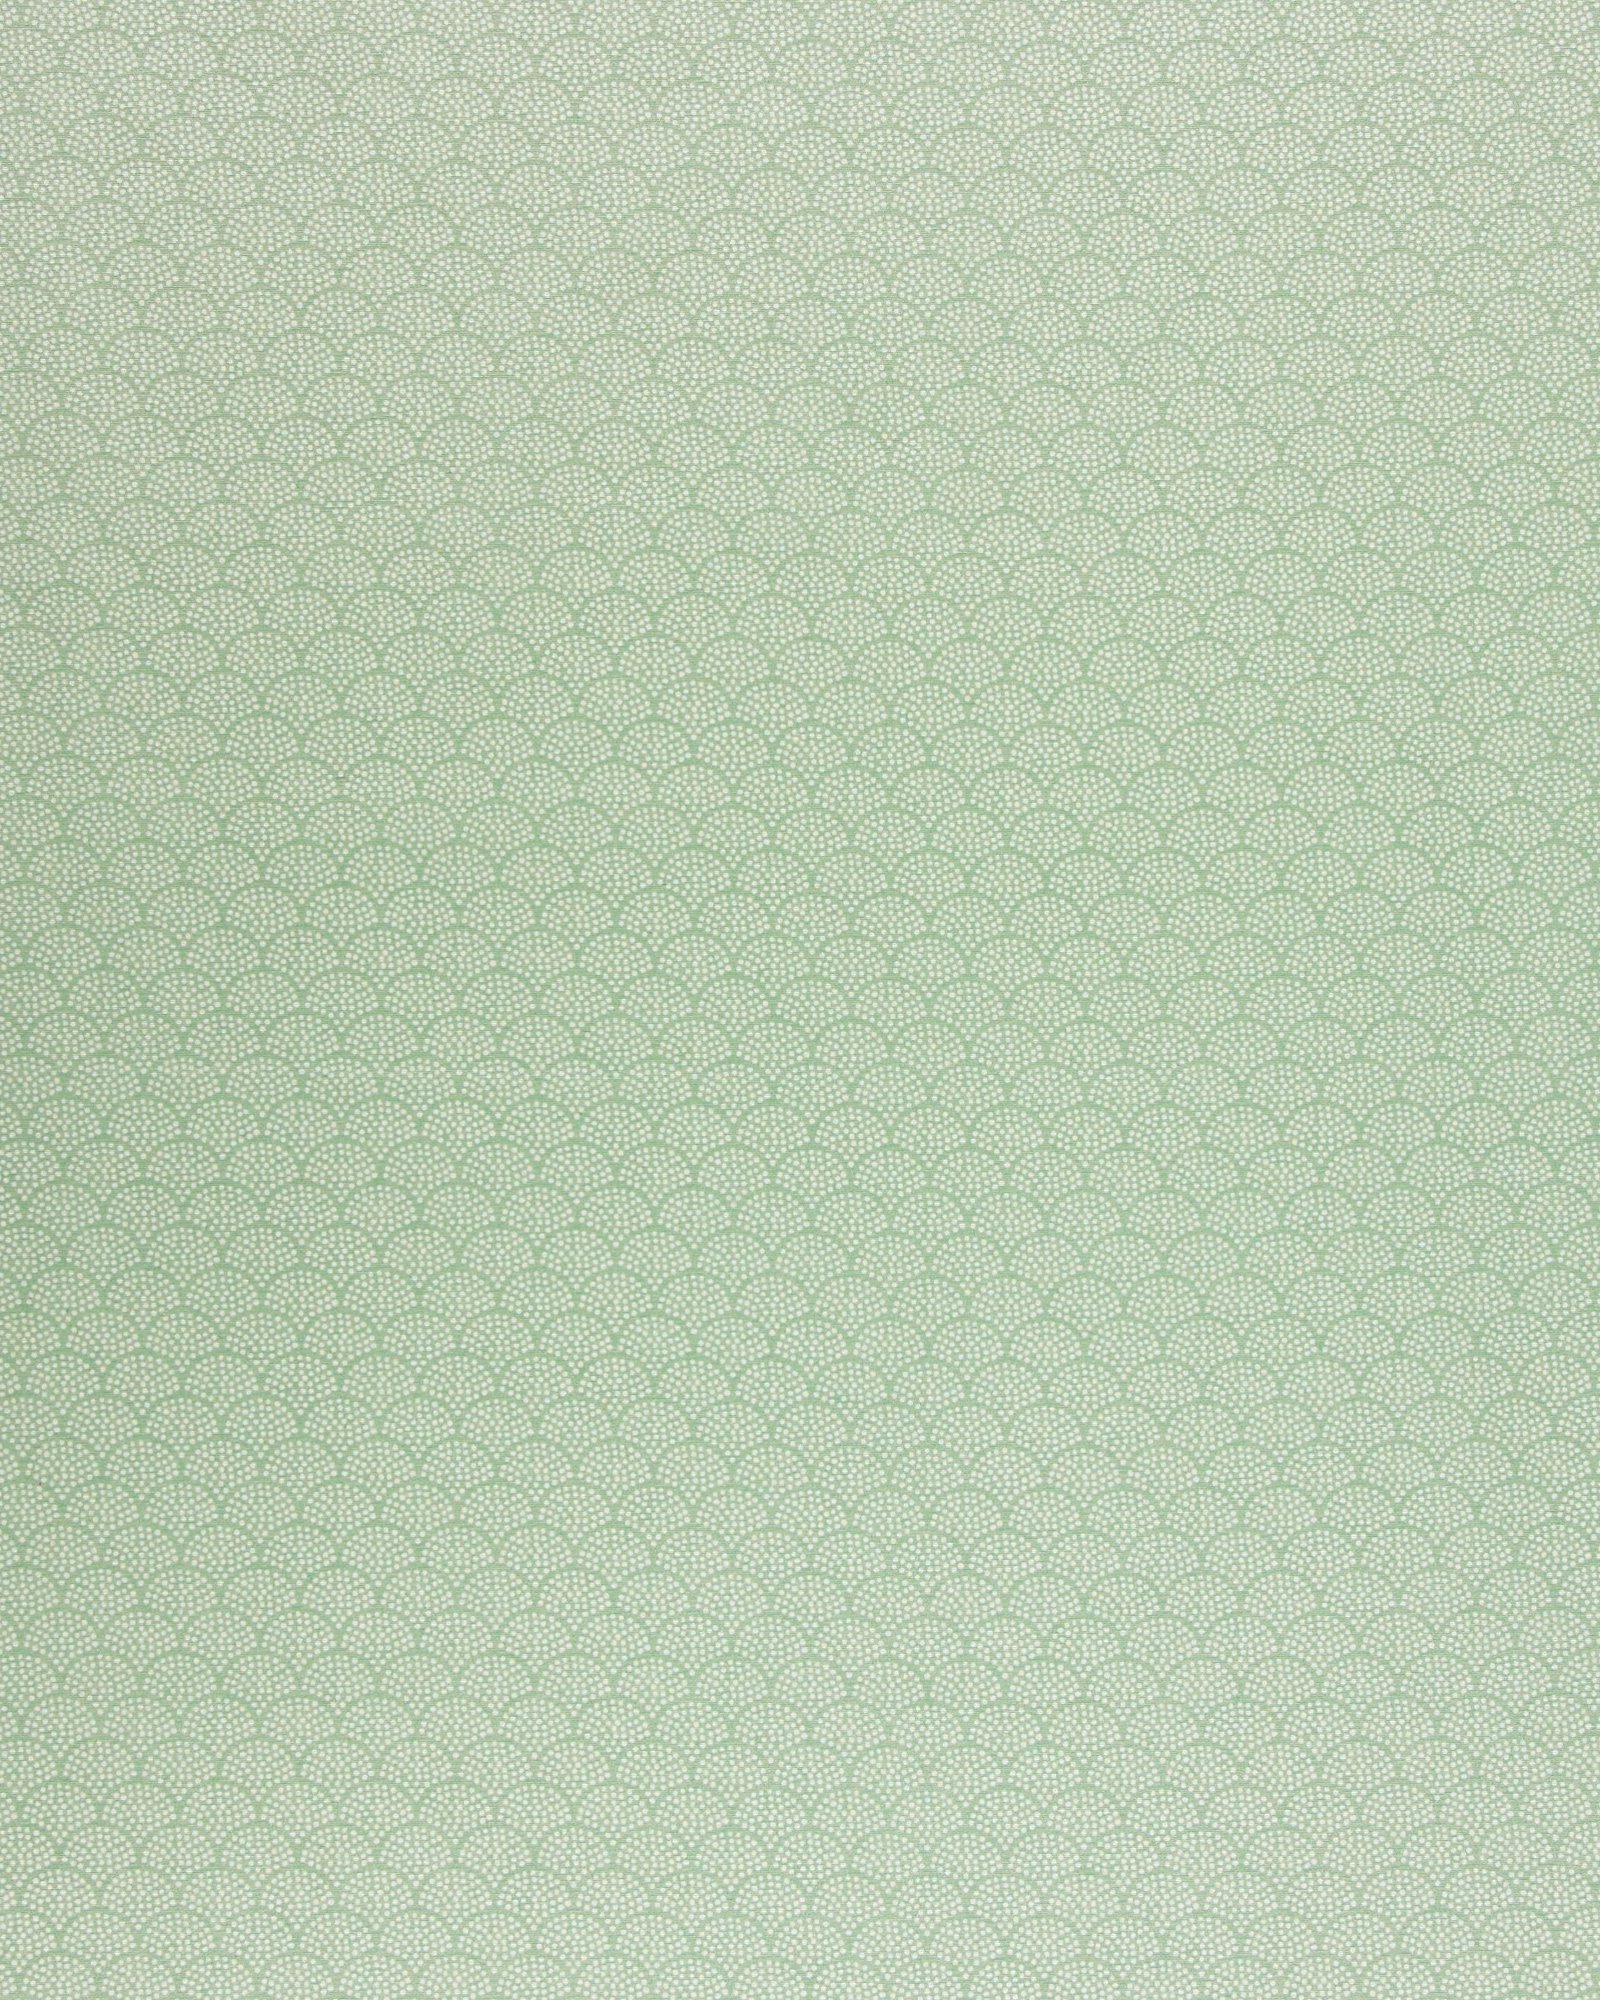 Textilwachstuch, grün/weiße Bögen 870343_pack_sp